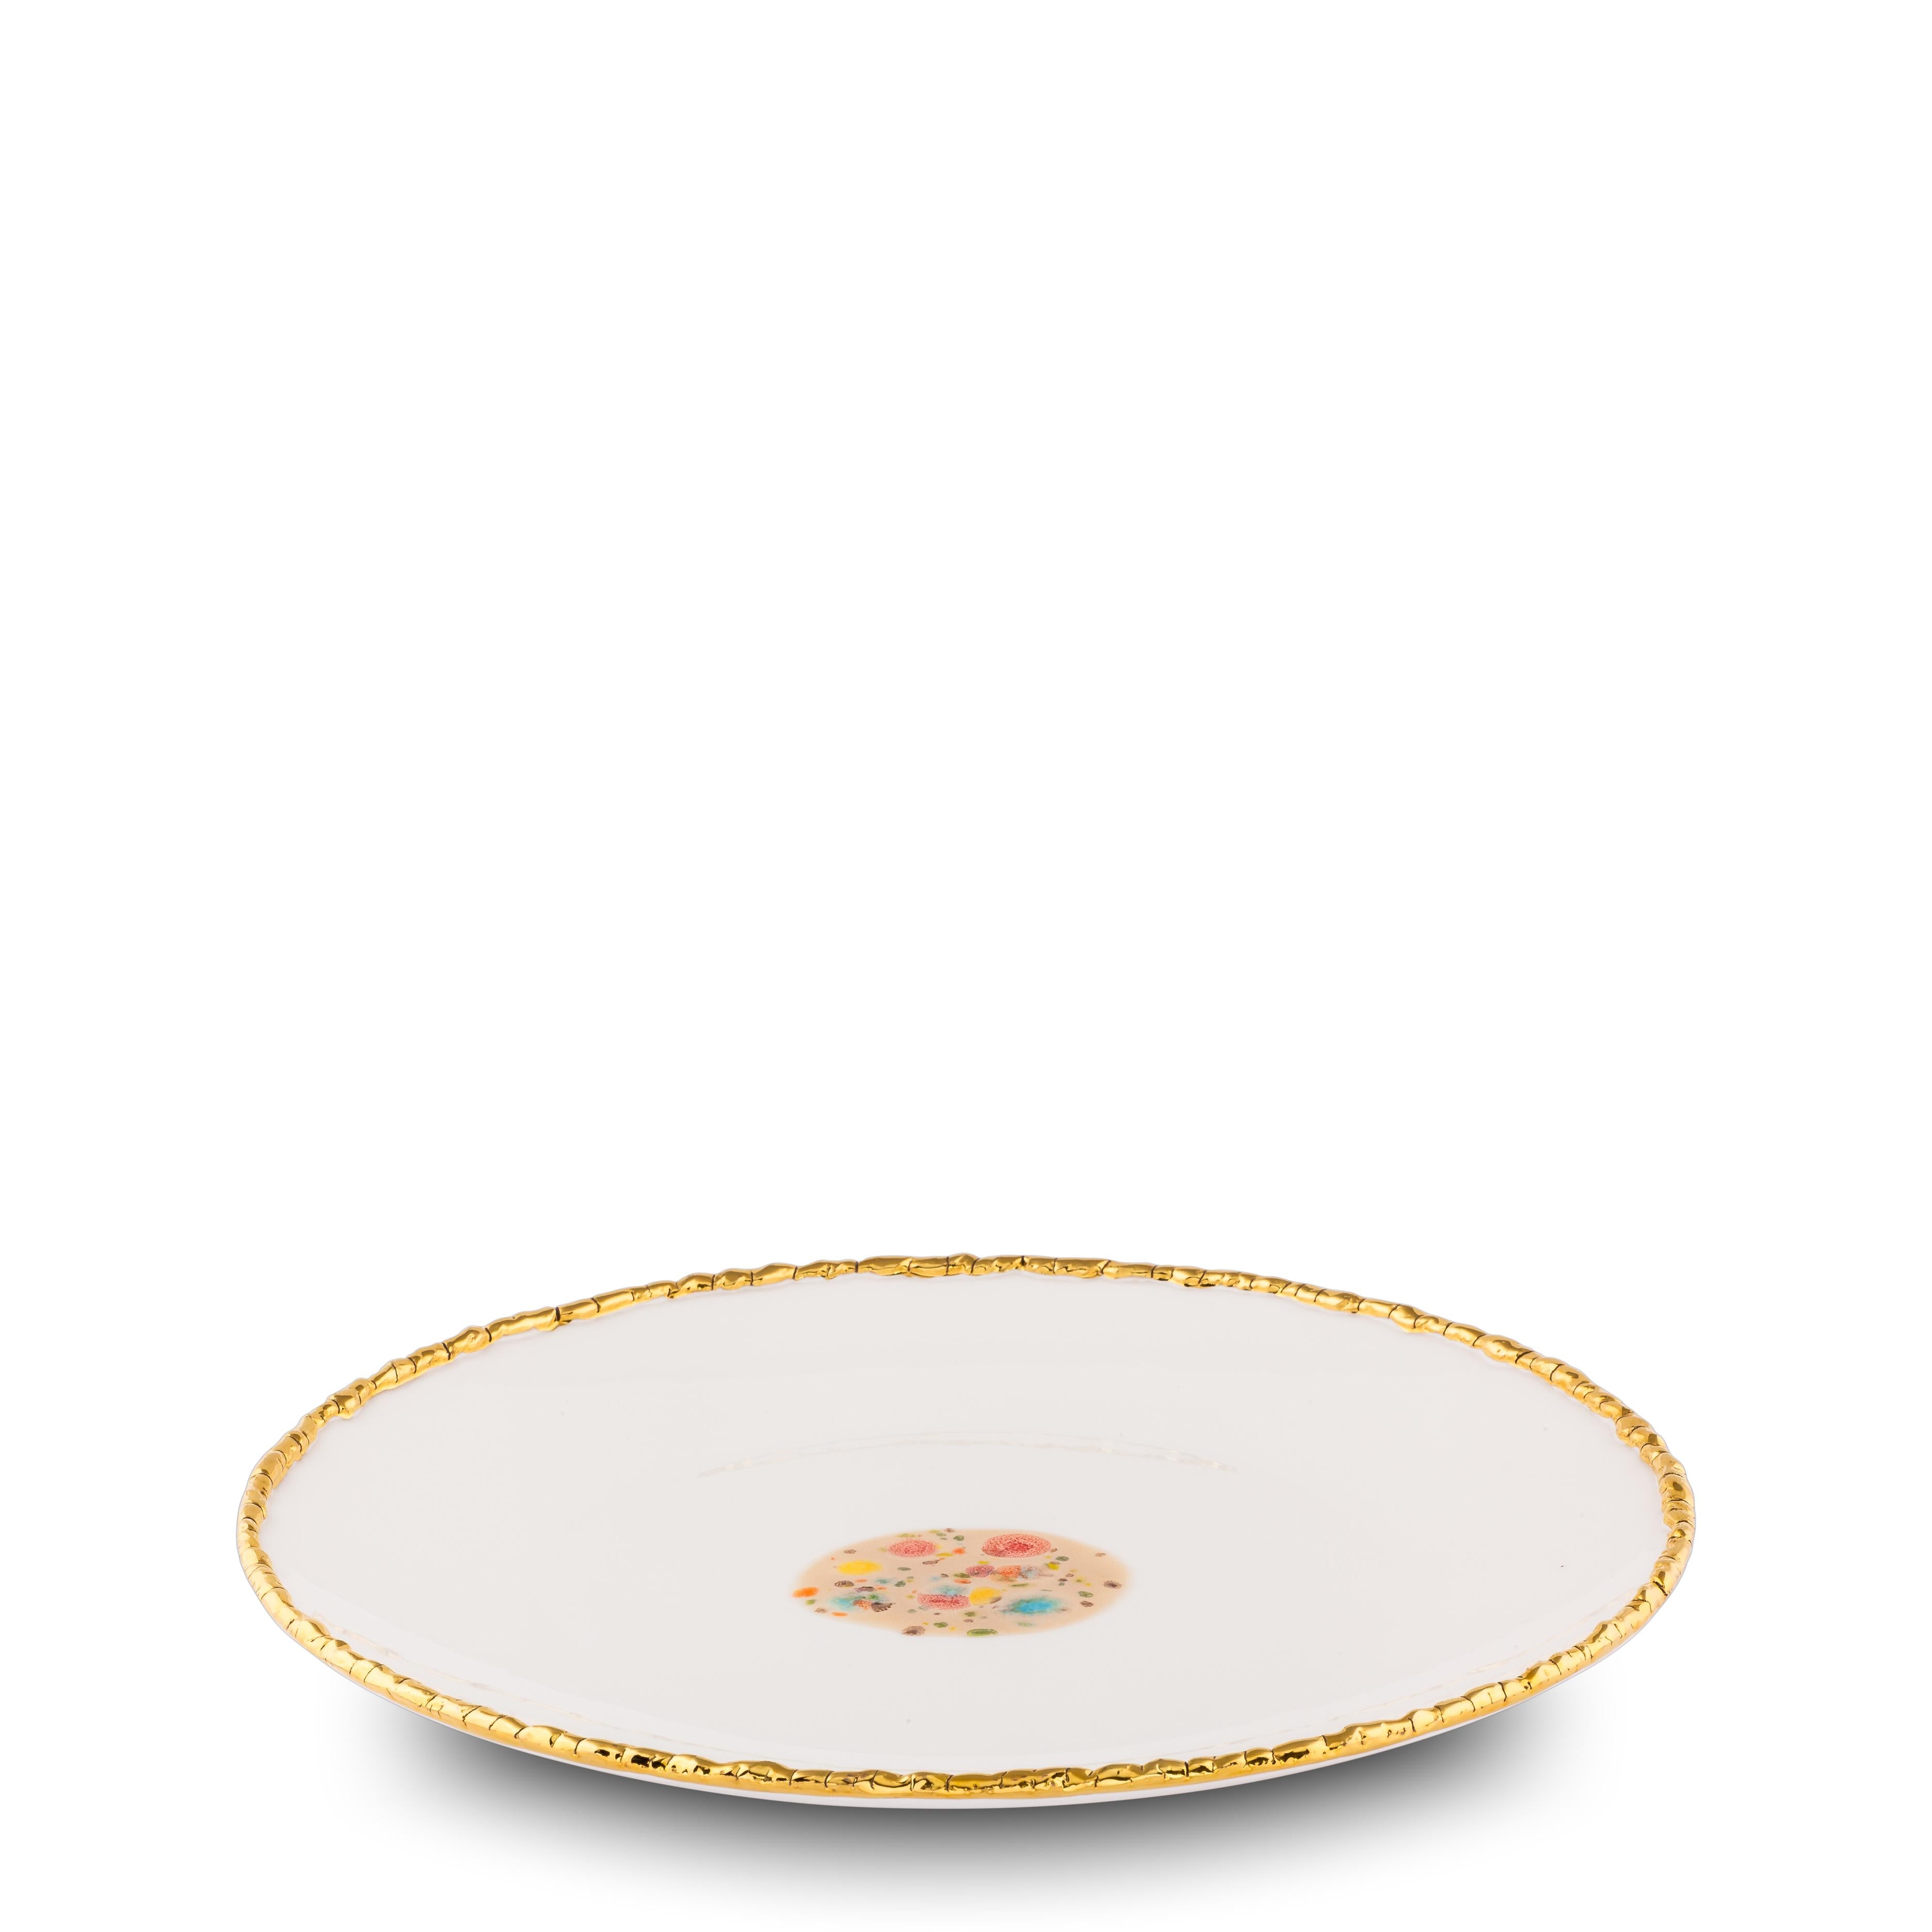 Dieser in Italien aus feinstem Porzellan handgefertigte weiße Teller mit Craquelé-Rand aus der Kollektion Chestnut hat einen originalen goldenen Craquelé-Rand, der die strahlend weiße Glasur und das klassische, gepunktete Dekor in der Mitte